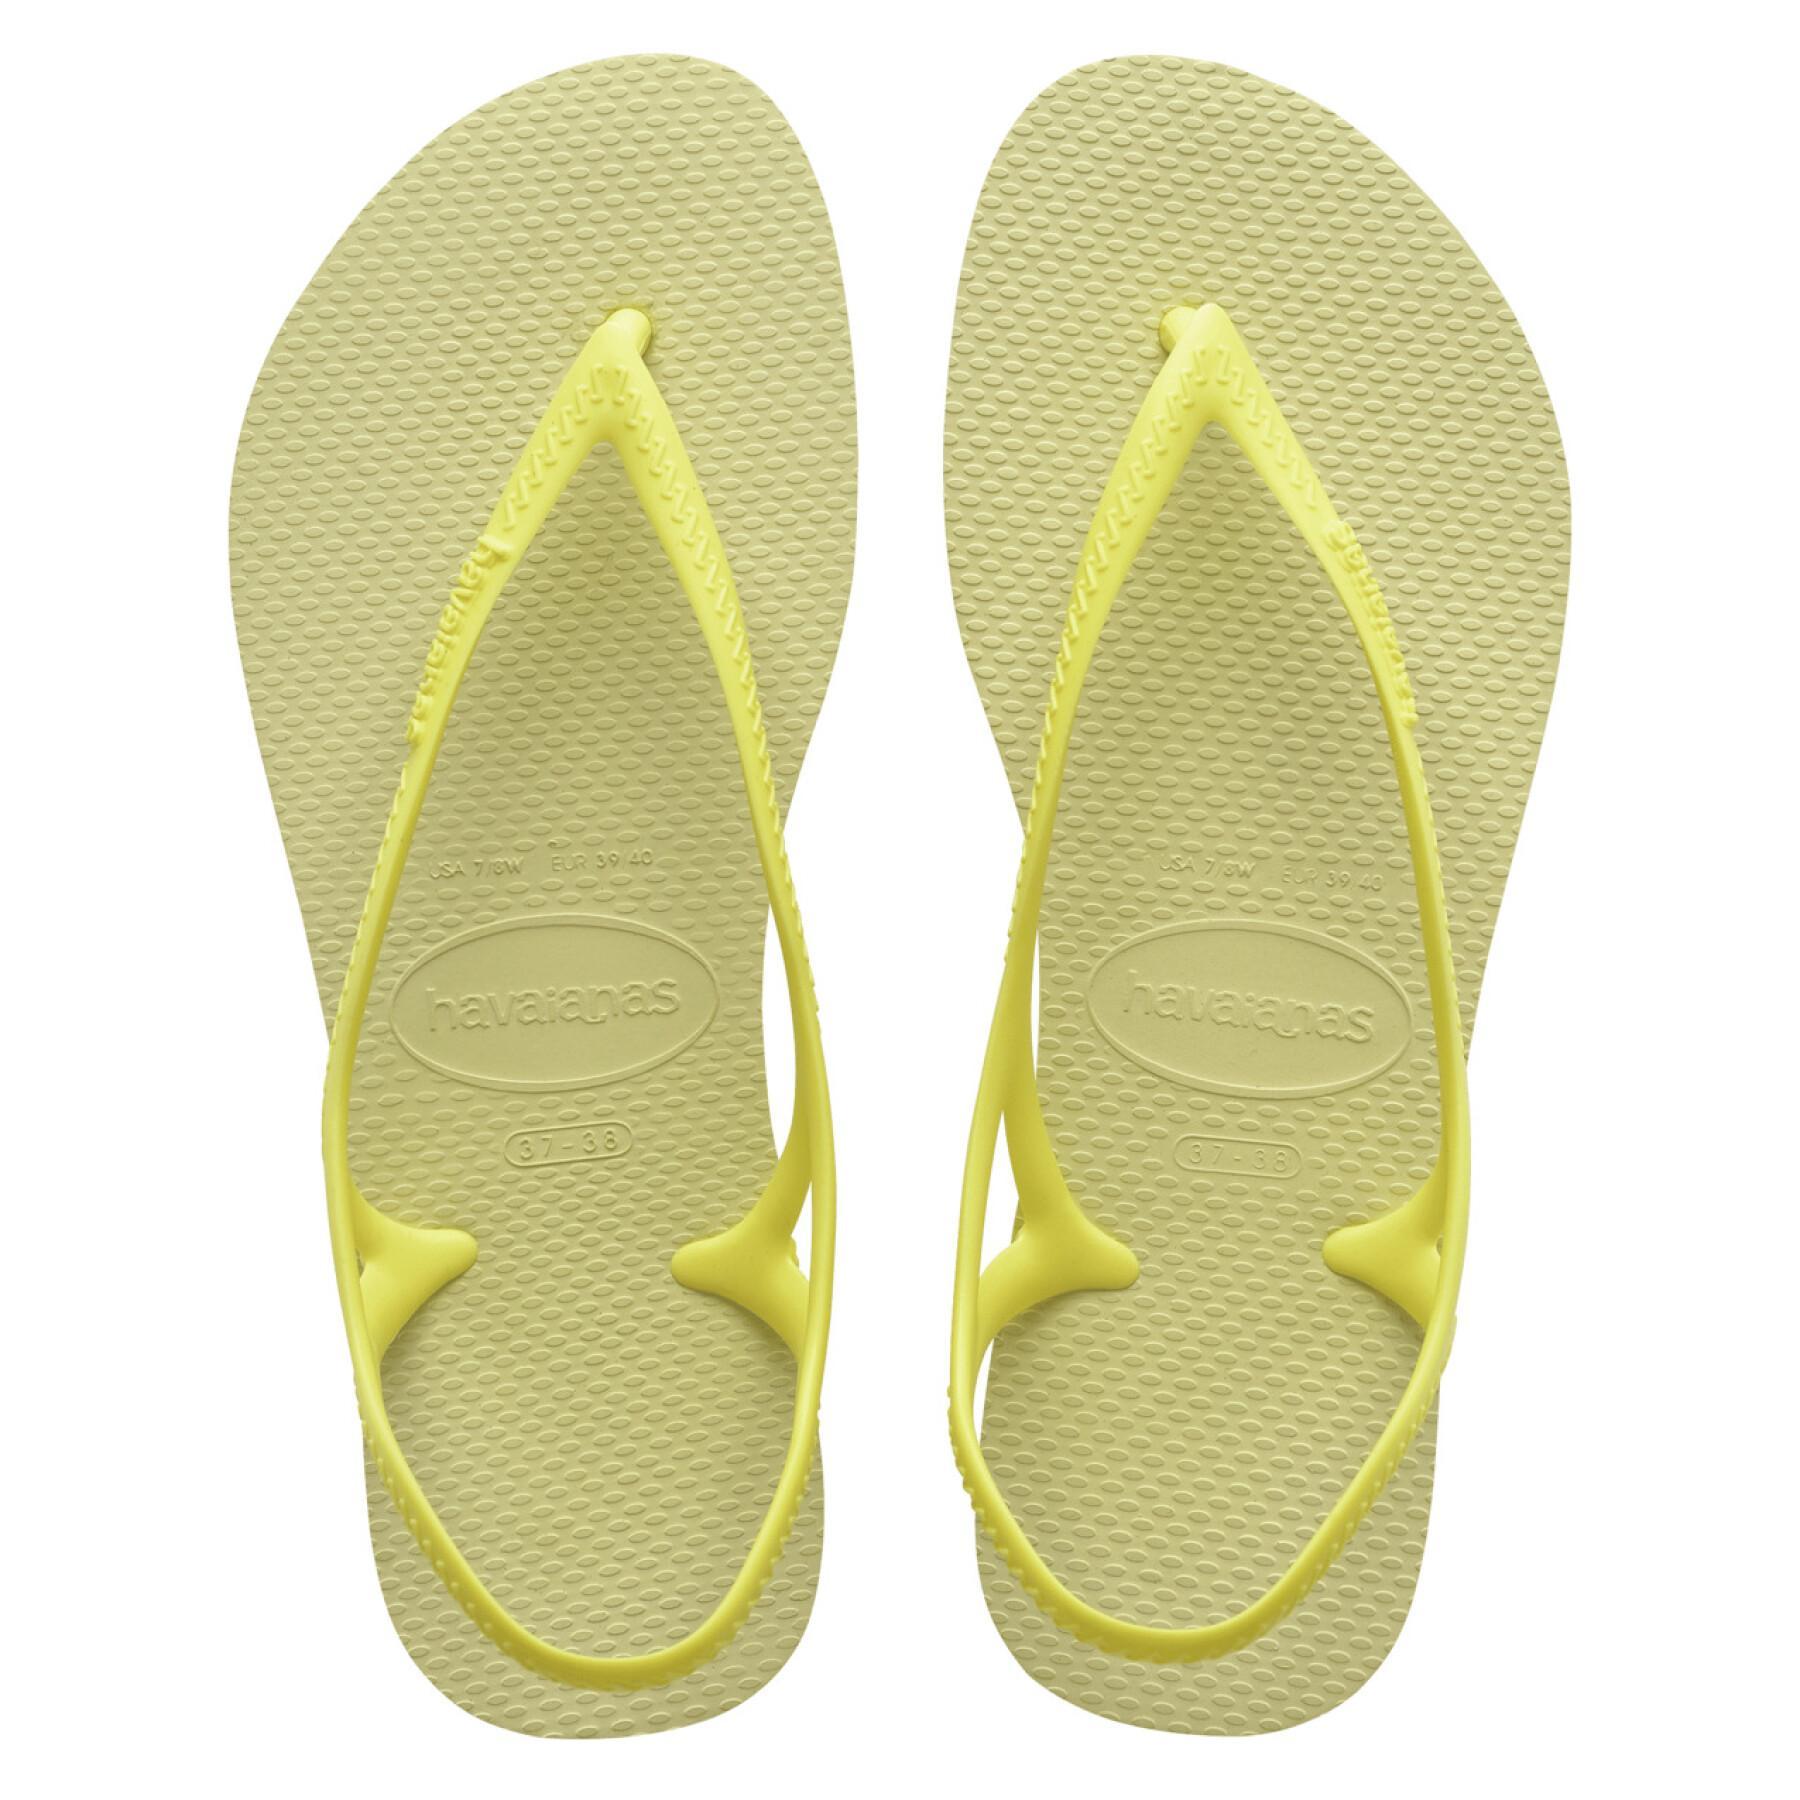 Women's sandals Havaianas Sunny II